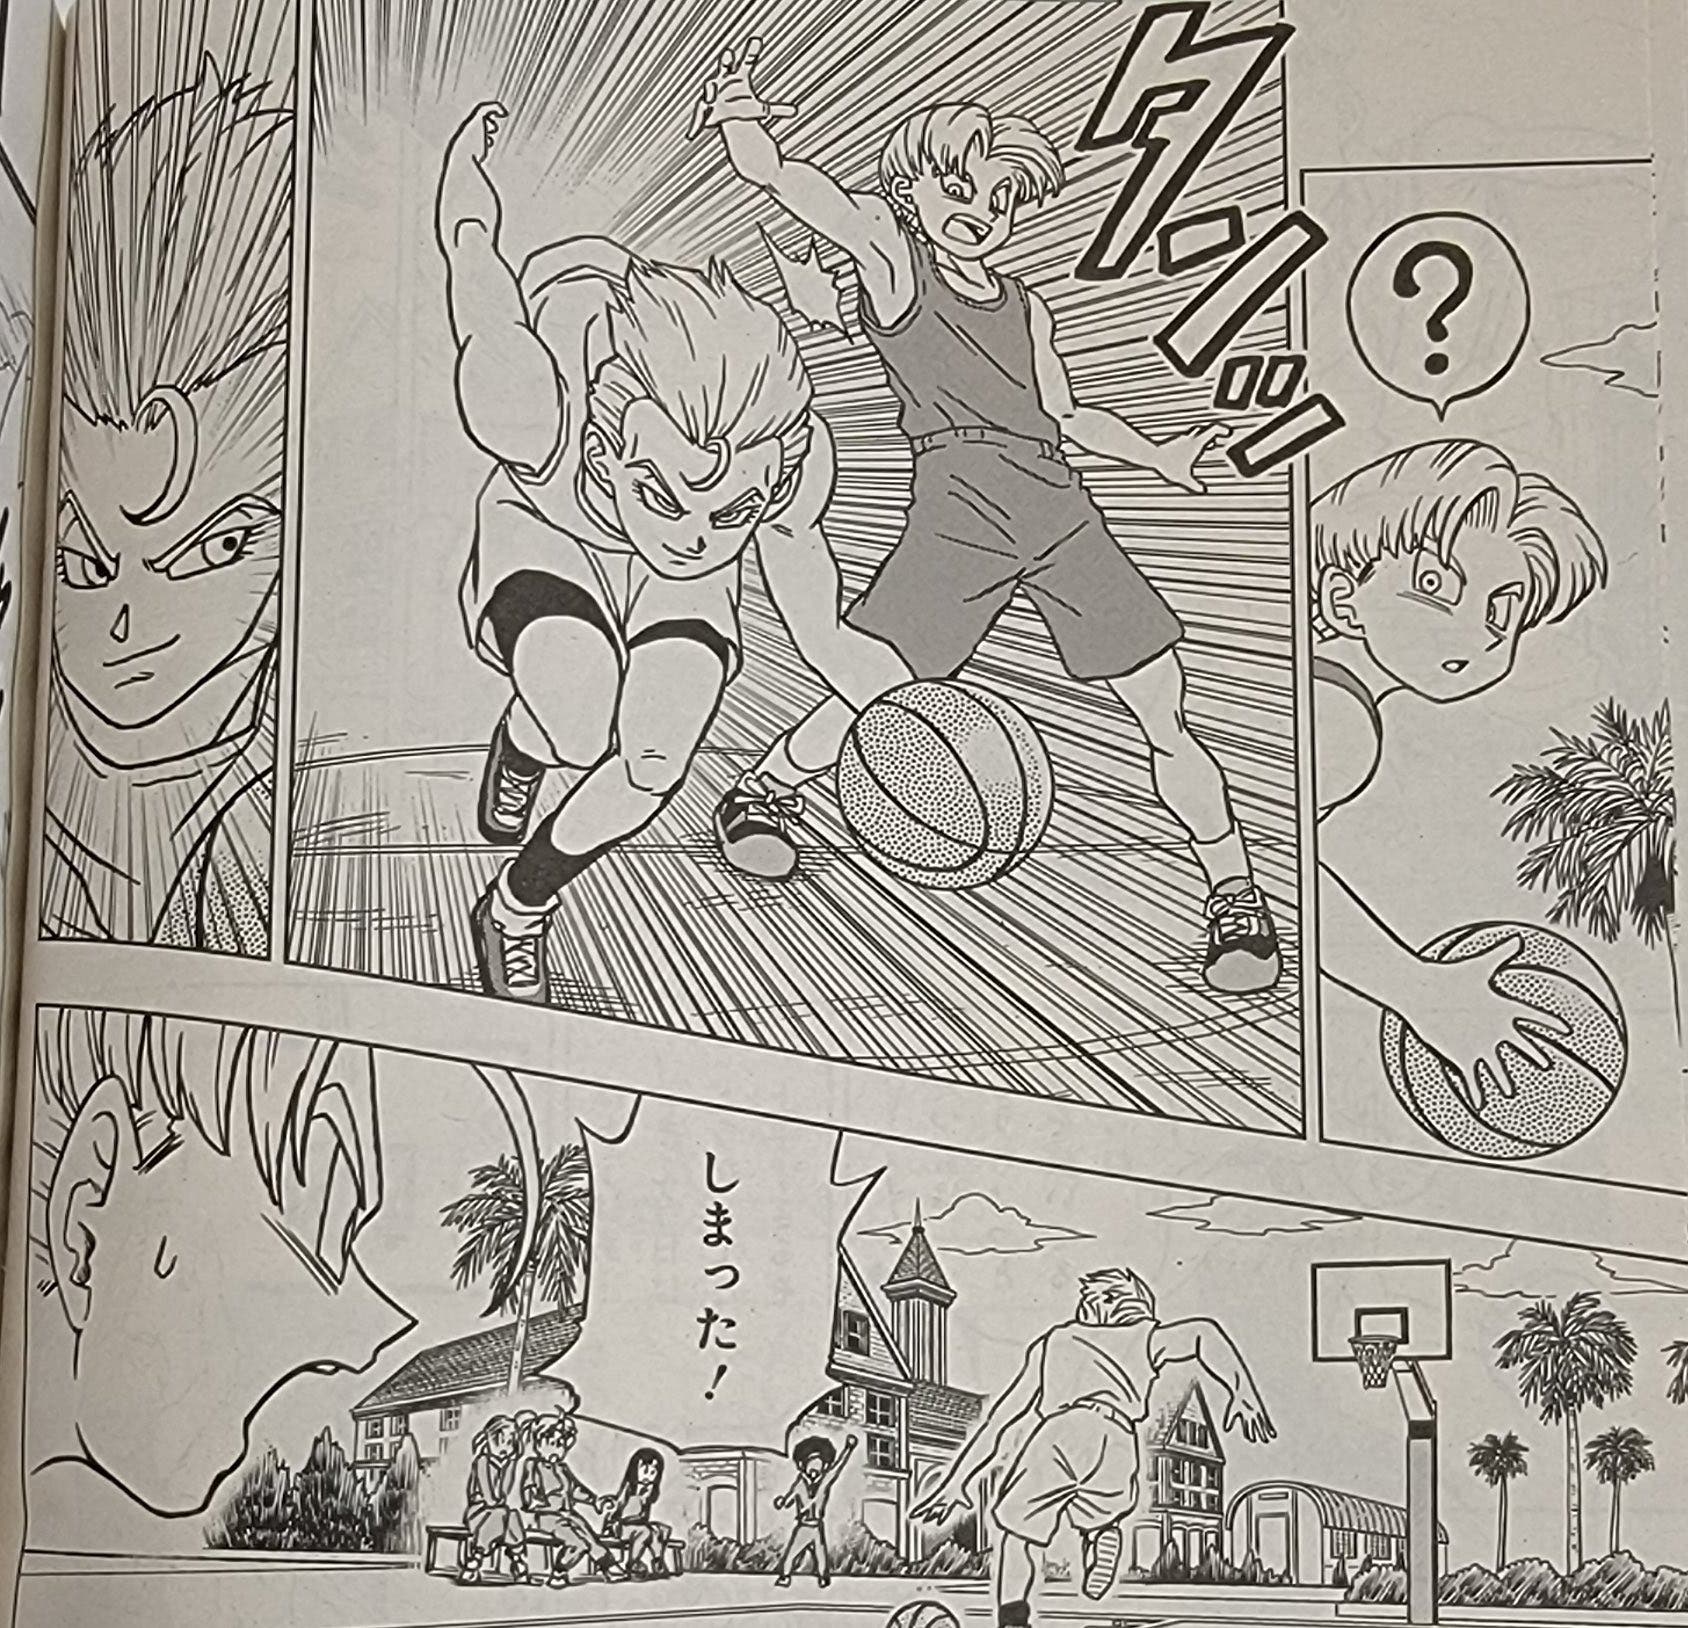 Dragon Ball Super: Filtrado al completo el capítulo 89 del manga